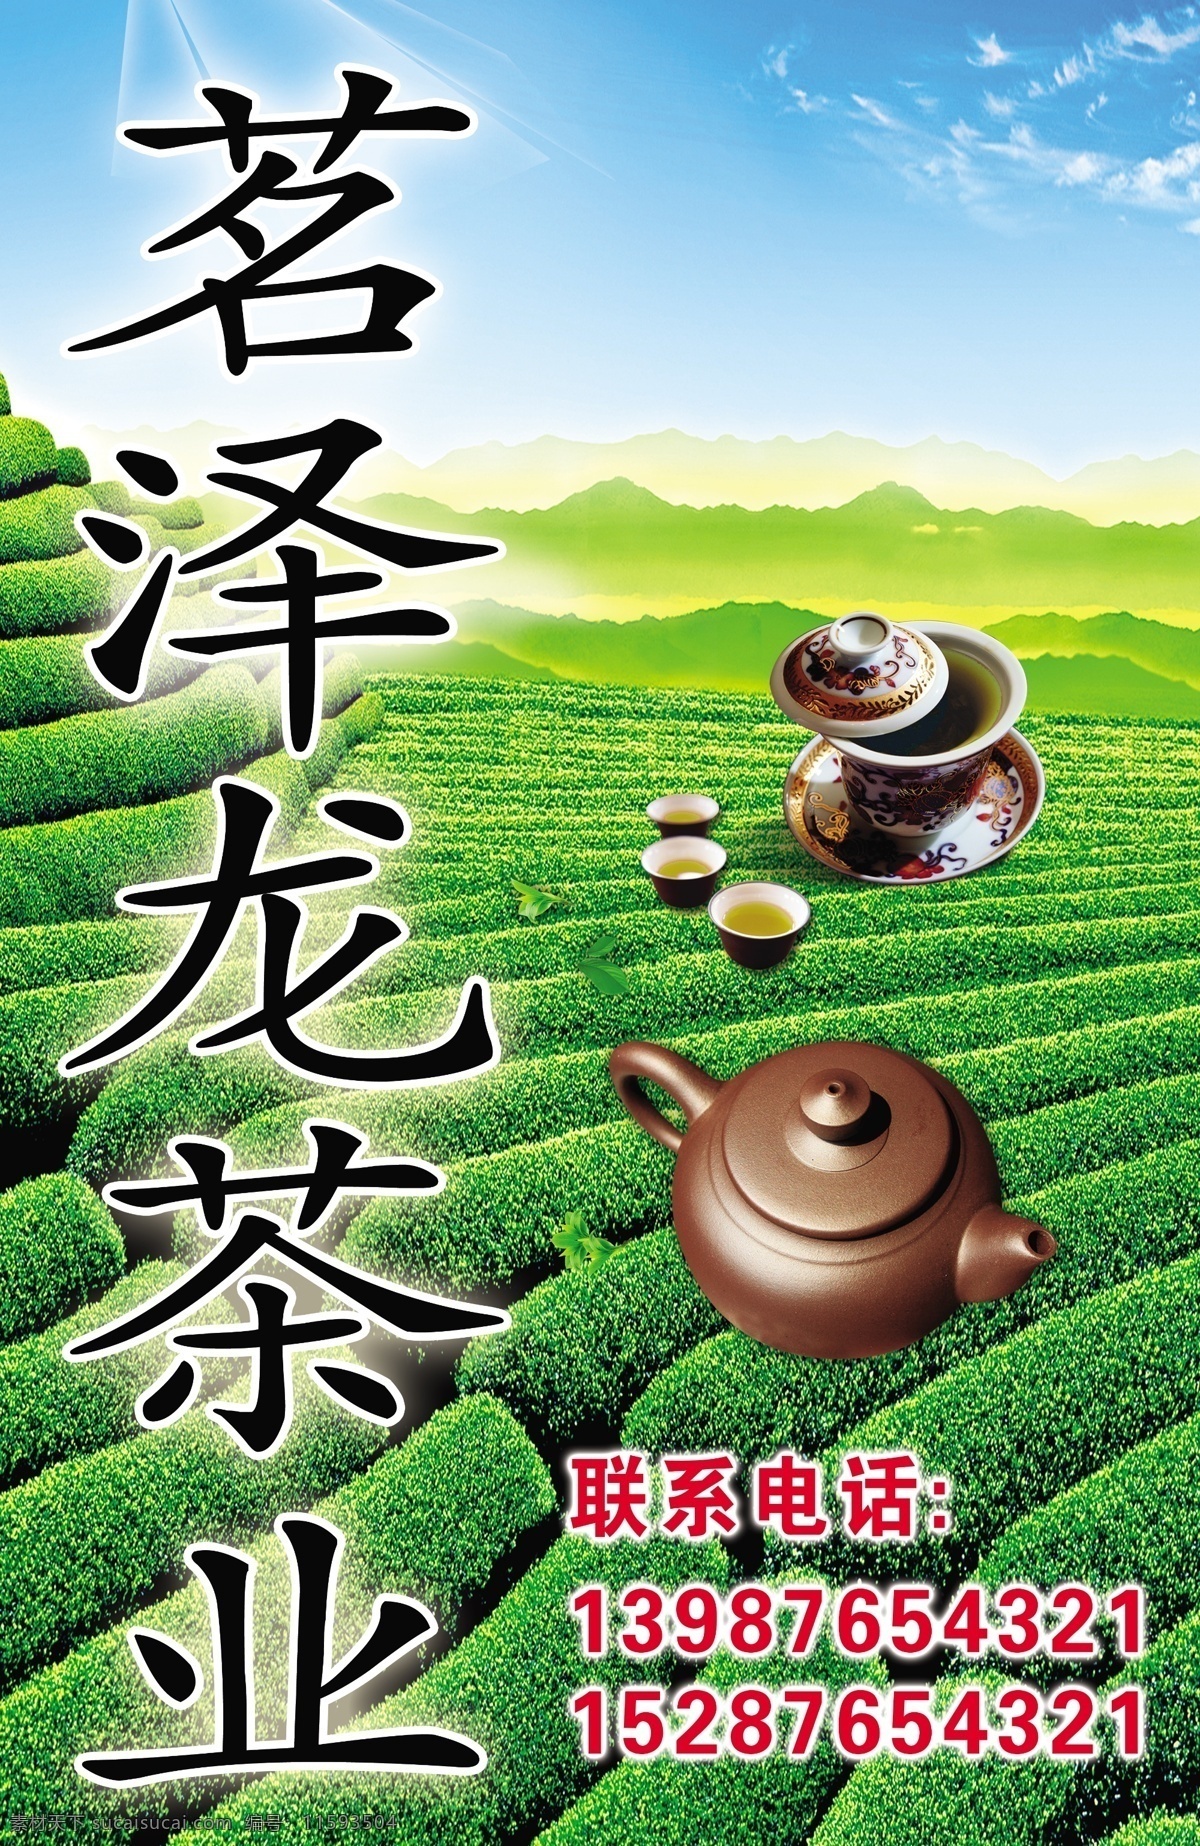 茶叶招牌 茶叶门头 茶山 茶具 茶壶 展板模板 广告设计模板 源文件 生活百科 餐饮美食